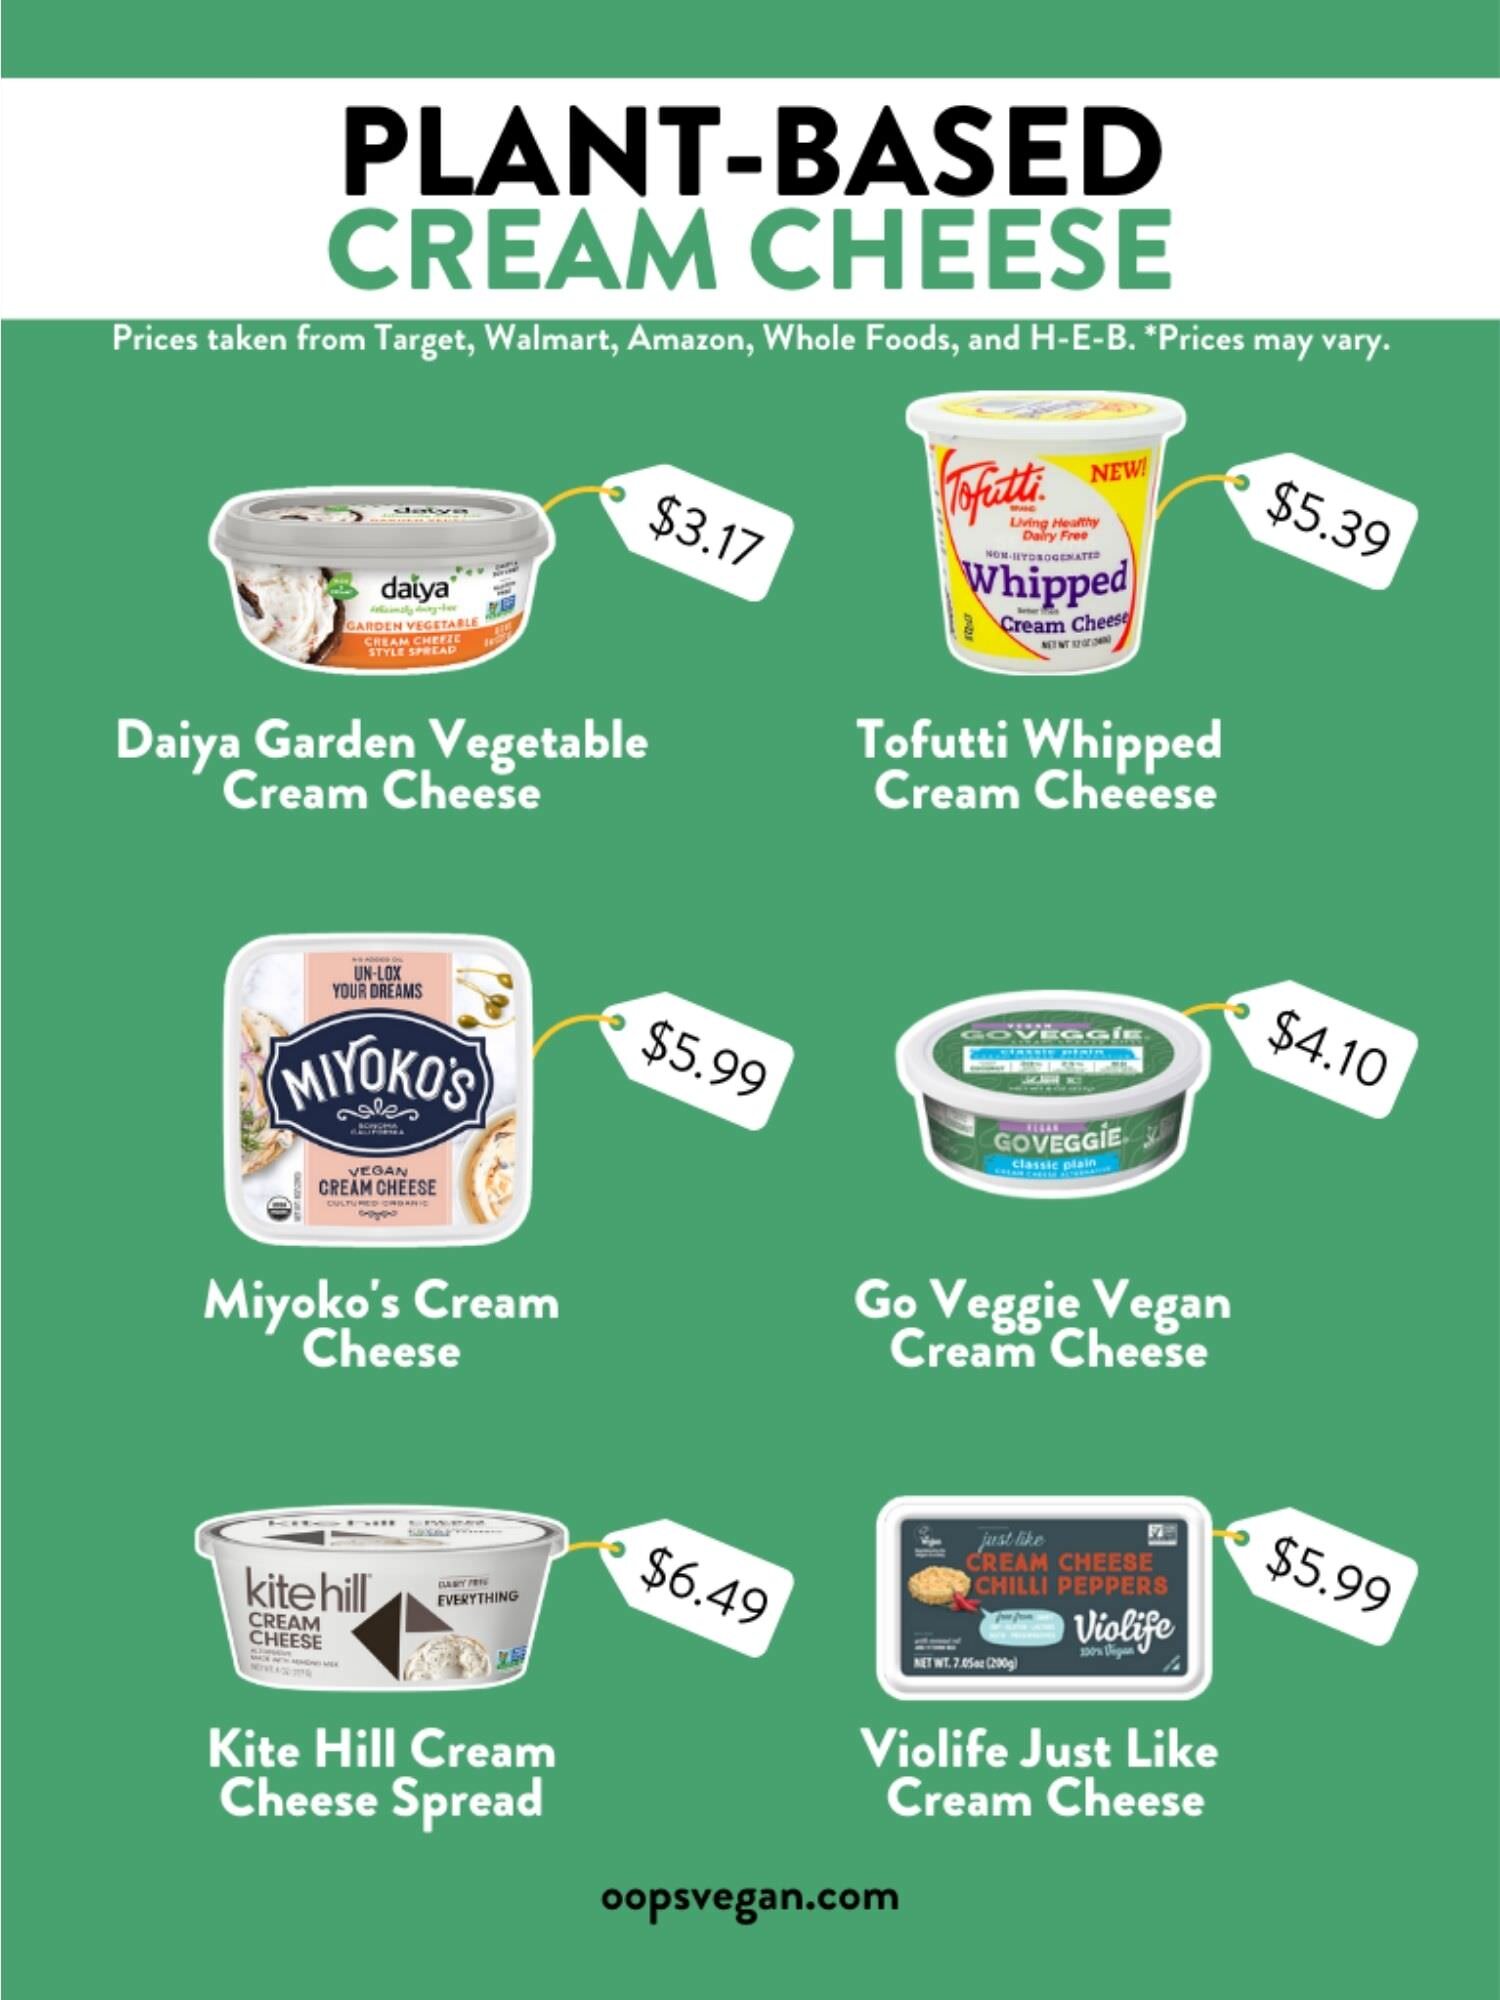 Top 6 Vegan Cream Cheese Brands OopsVegan Recommendations — OopsVegan